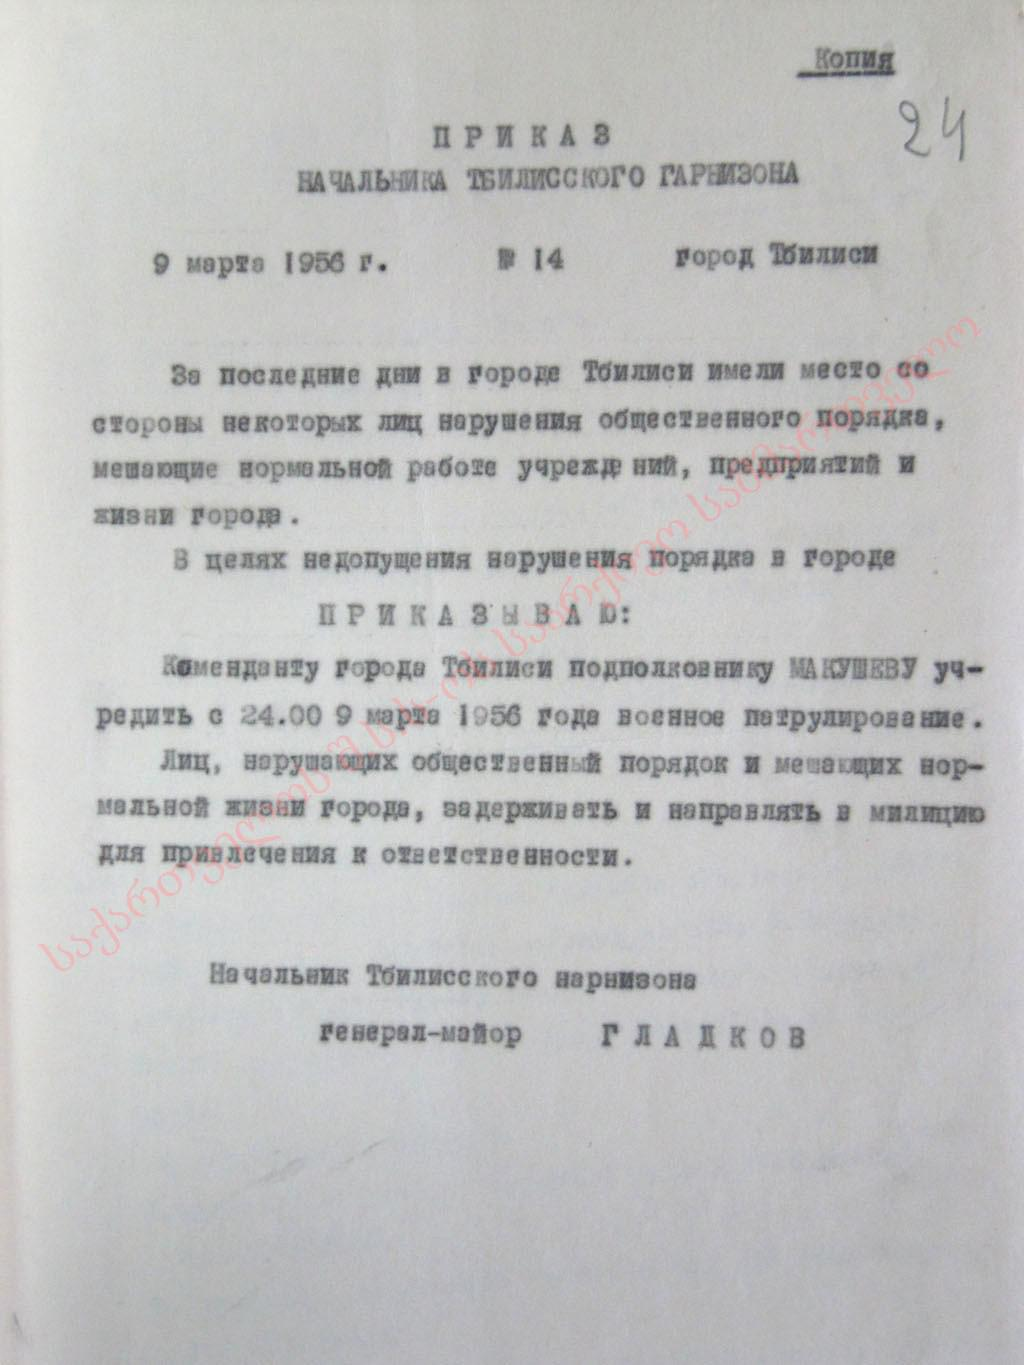 Приказ начальника Тбилисского гарнизона Гладкова от 9 марта 1956 г.